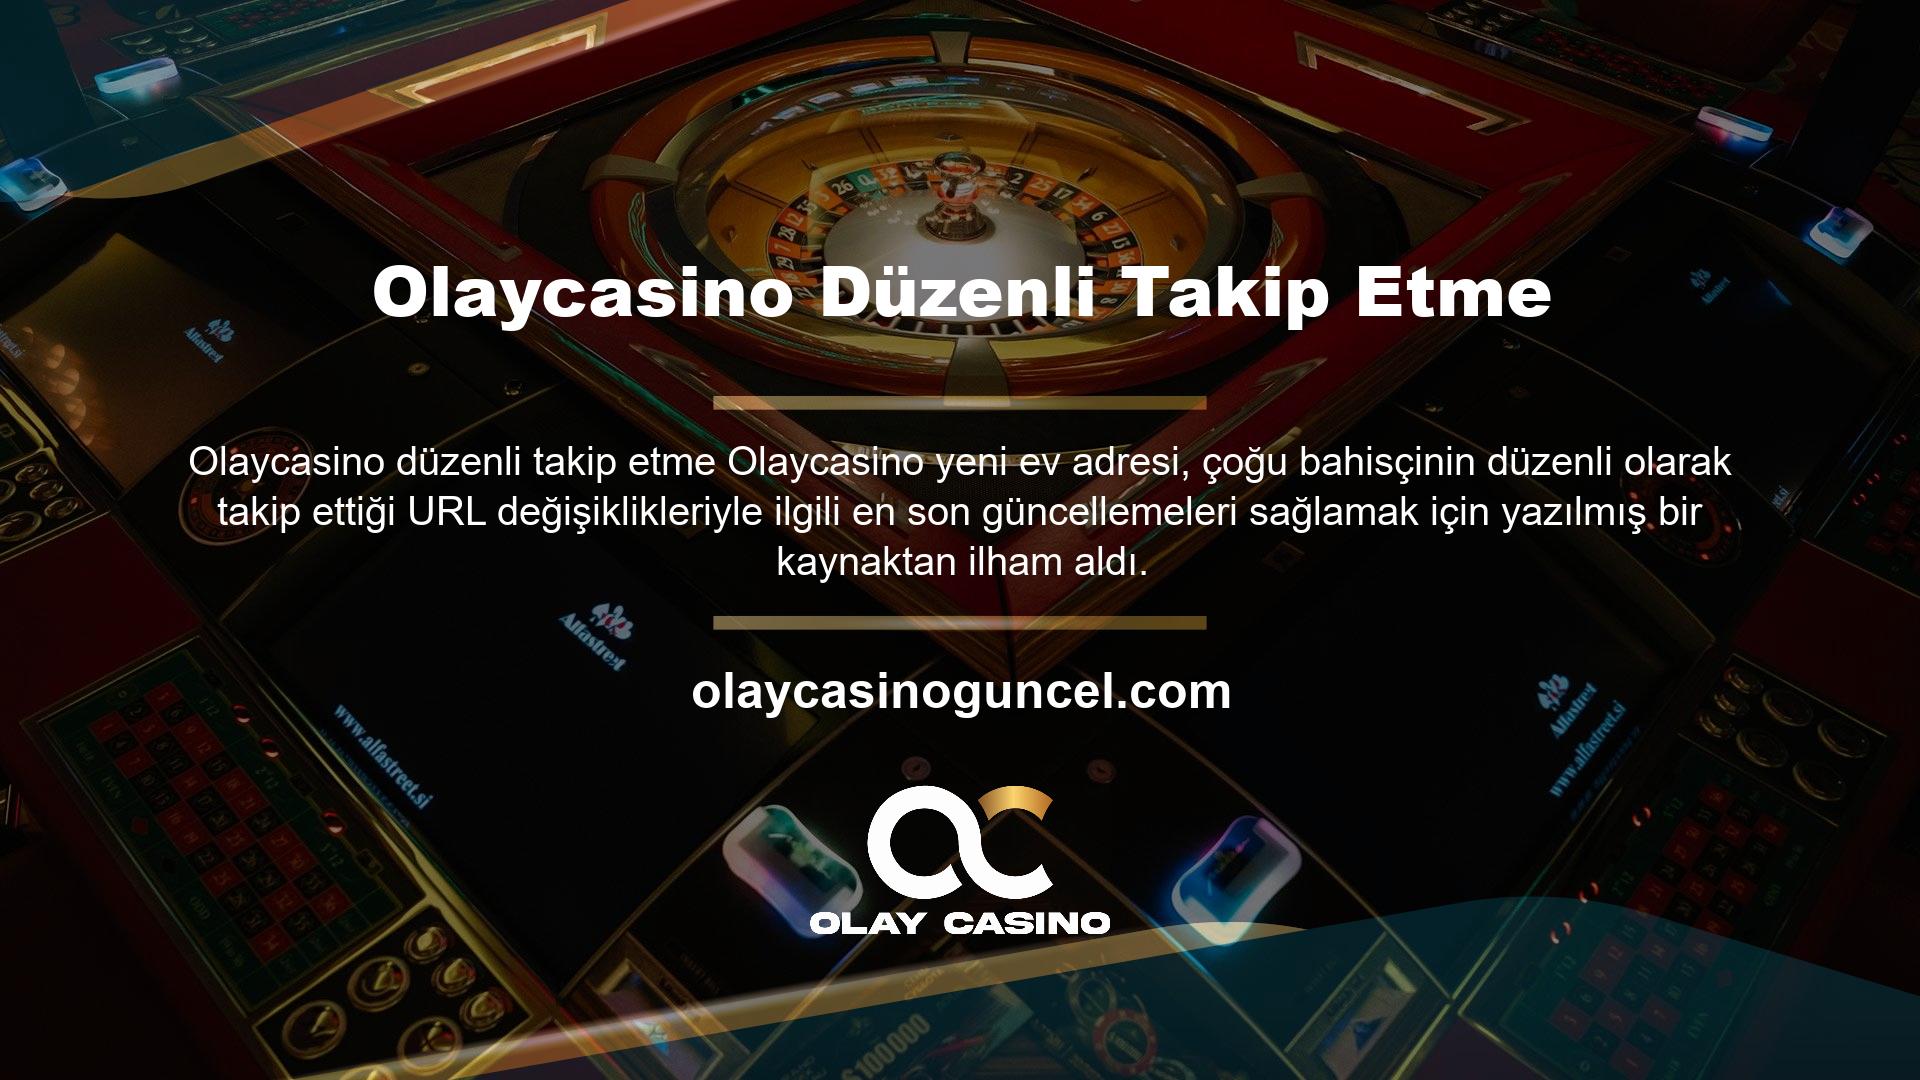 Olaycasino bahis sitesi Türkiye'nin ilk ve en kaliteli bahis sitelerinden biri olup, Avrupa'daki bahis sitelerinin çoğunun gerisinde kalmakta ve en aktif kişiler arasında sürekli olarak üst sıralarda yer almaktadır